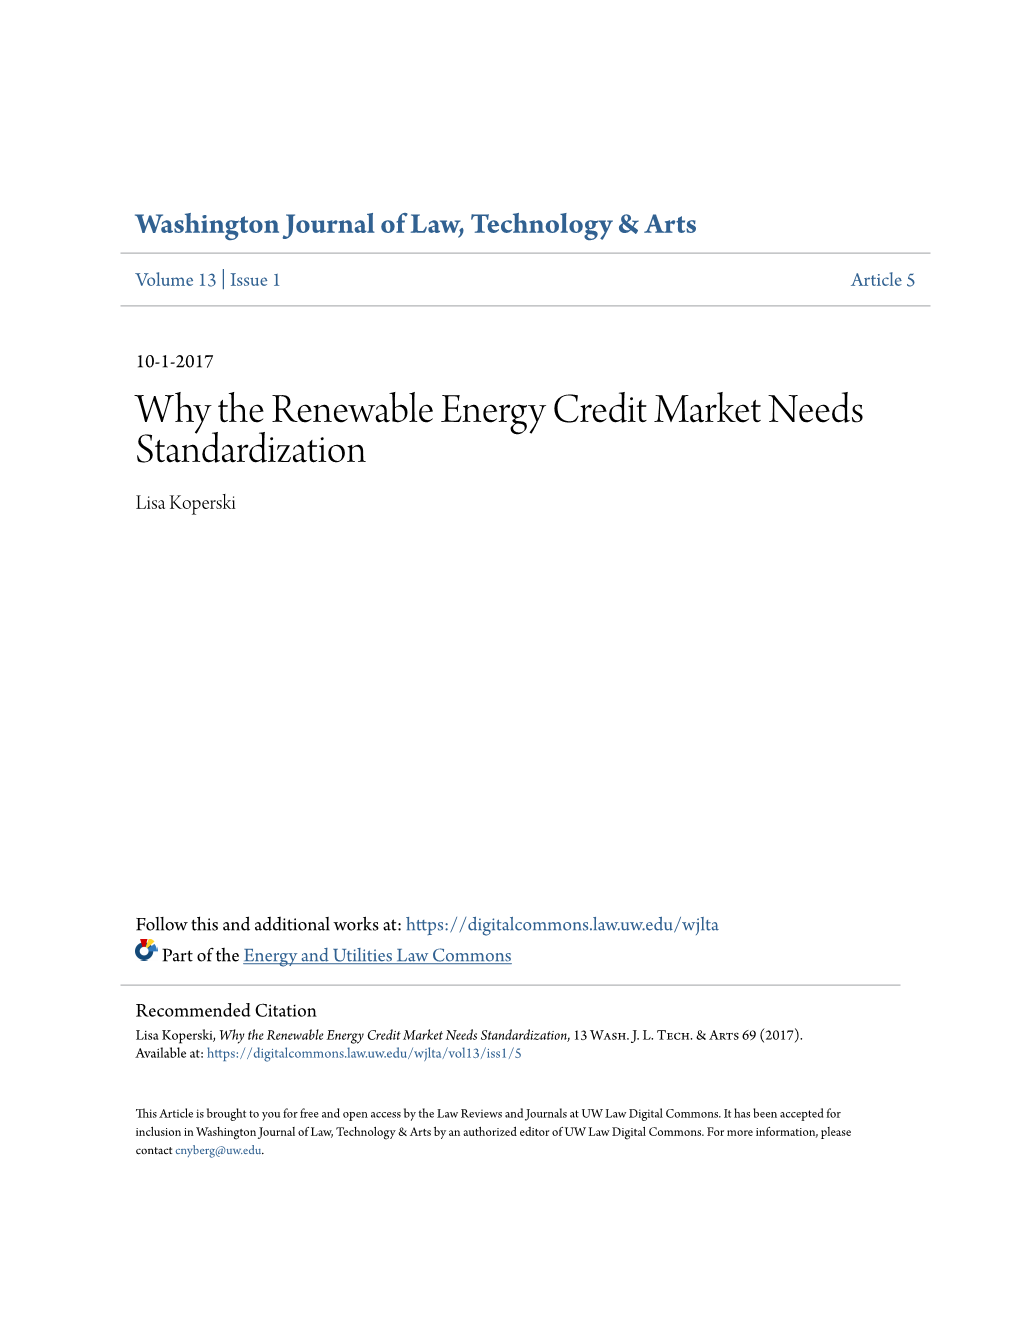 Why the Renewable Energy Credit Market Needs Standardization Lisa Koperski